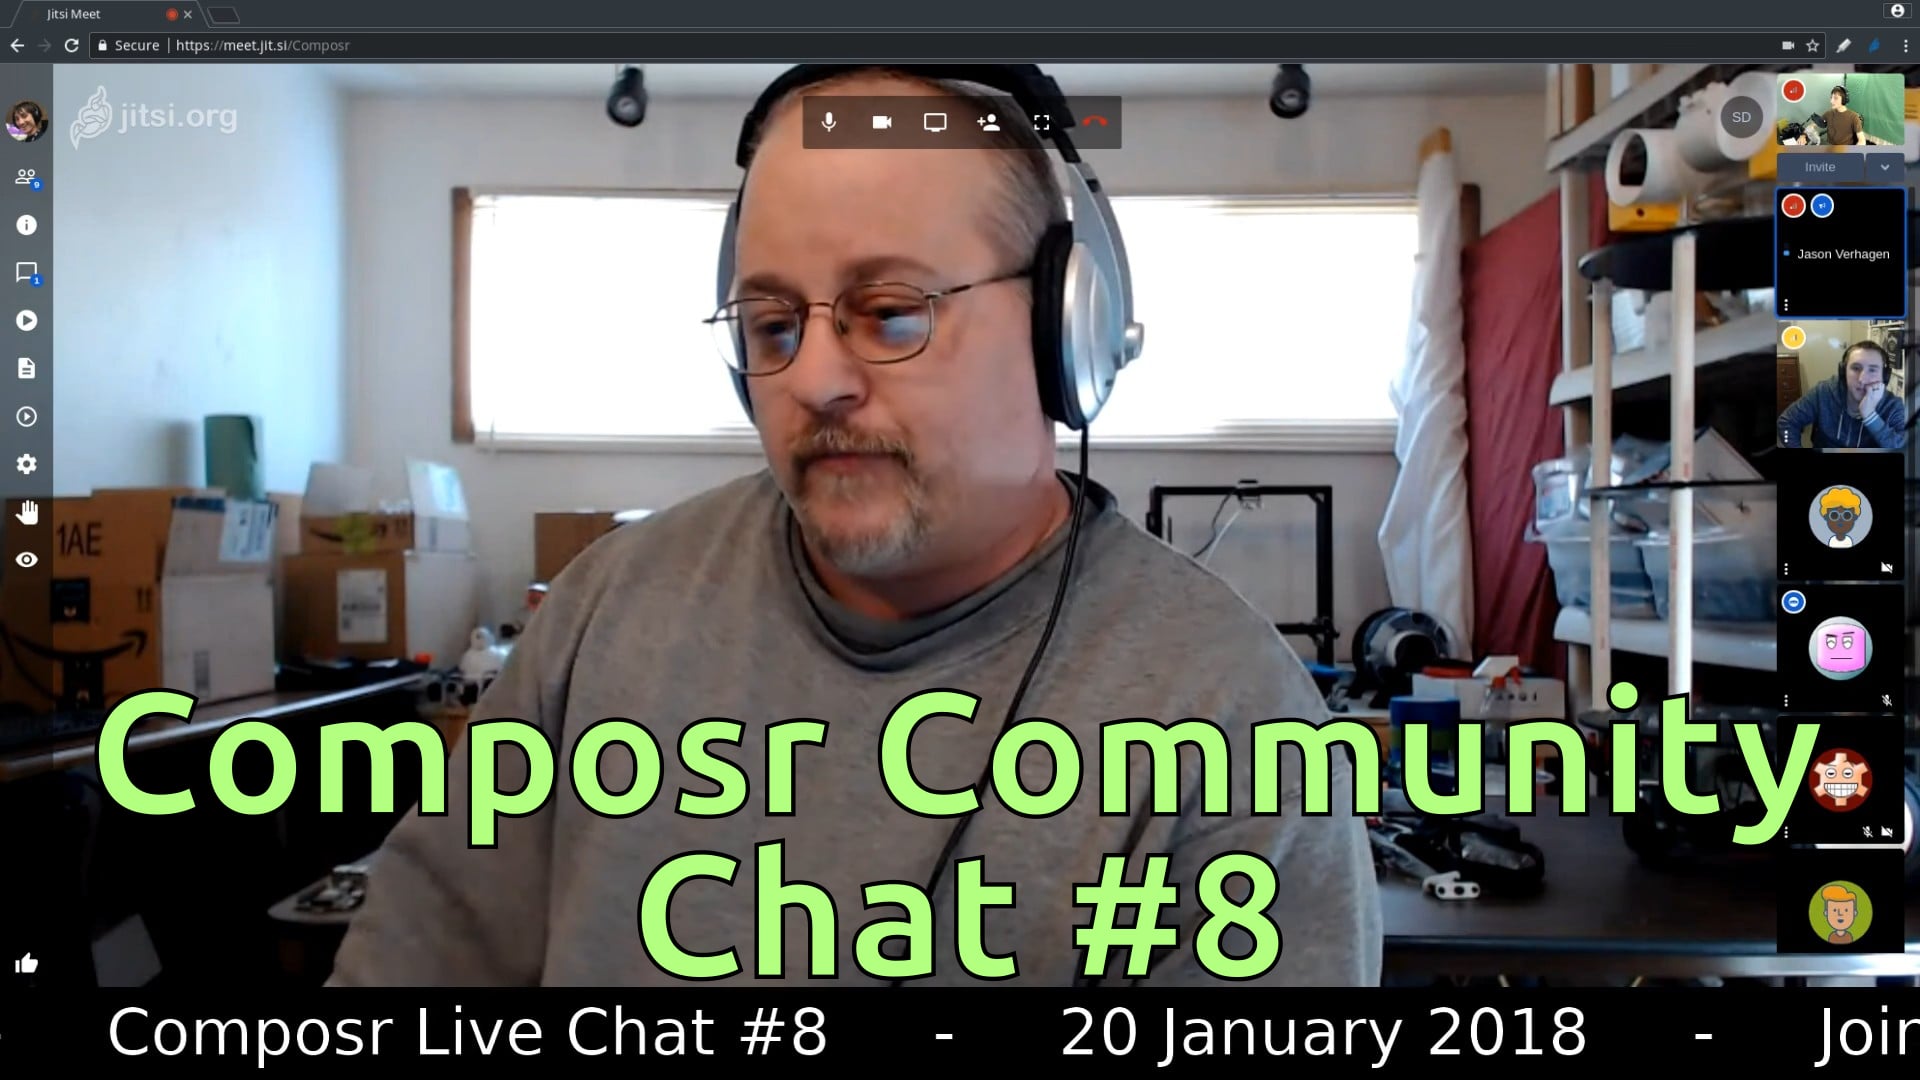 Composr Community Chat #8